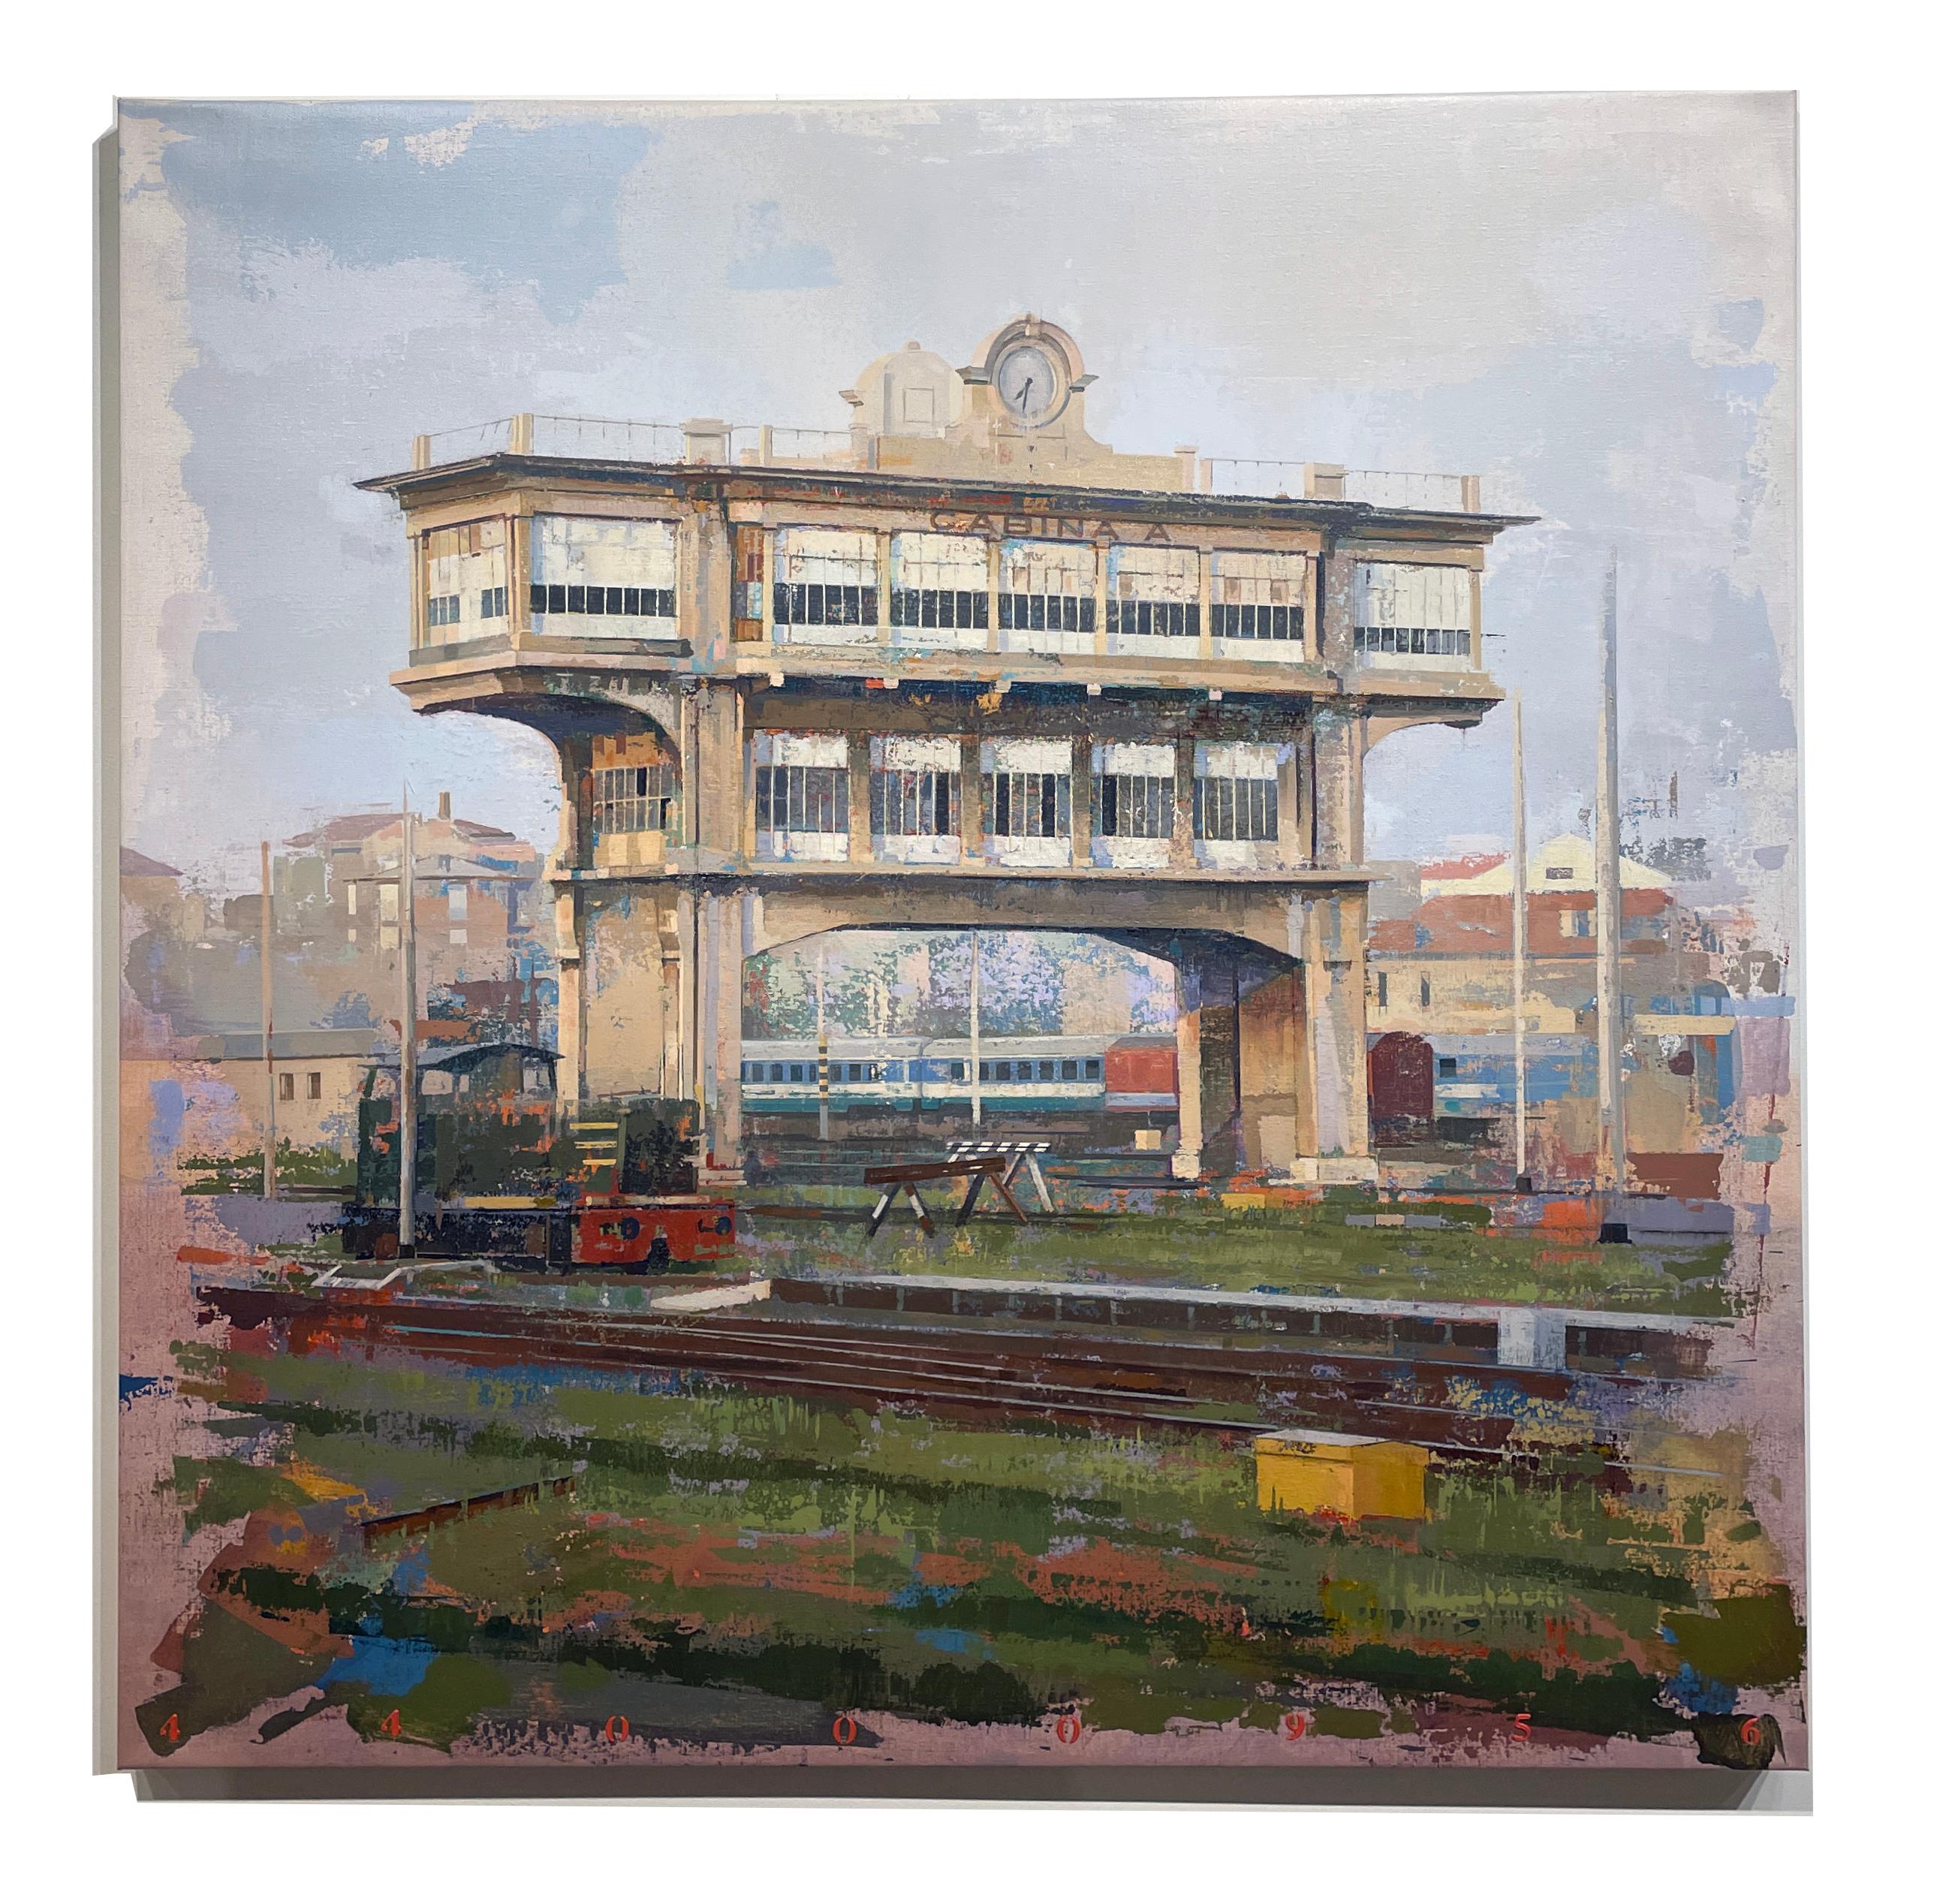 Cabana A - Paysage urbain abstrait de la tour de la gare centrale de Milan - Painting de Albert Vidal Moreno